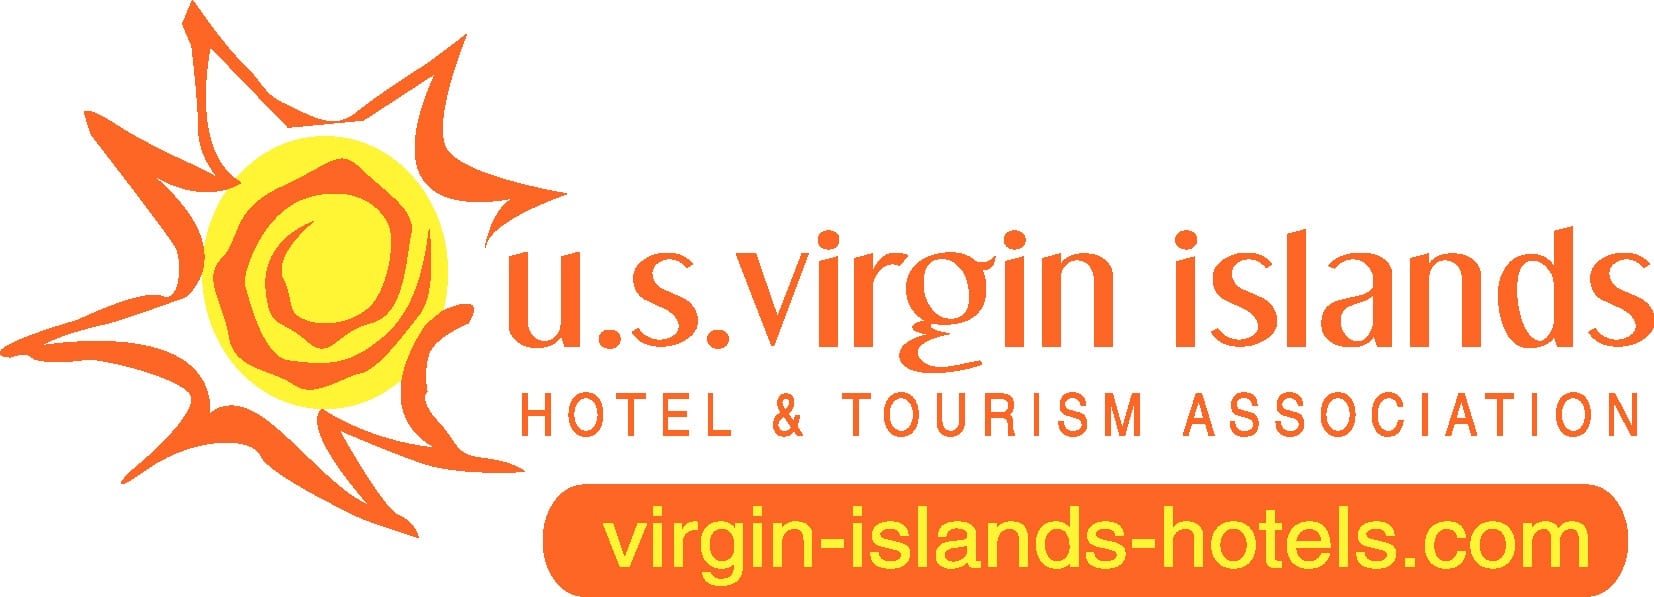 hotel and tourism association logo